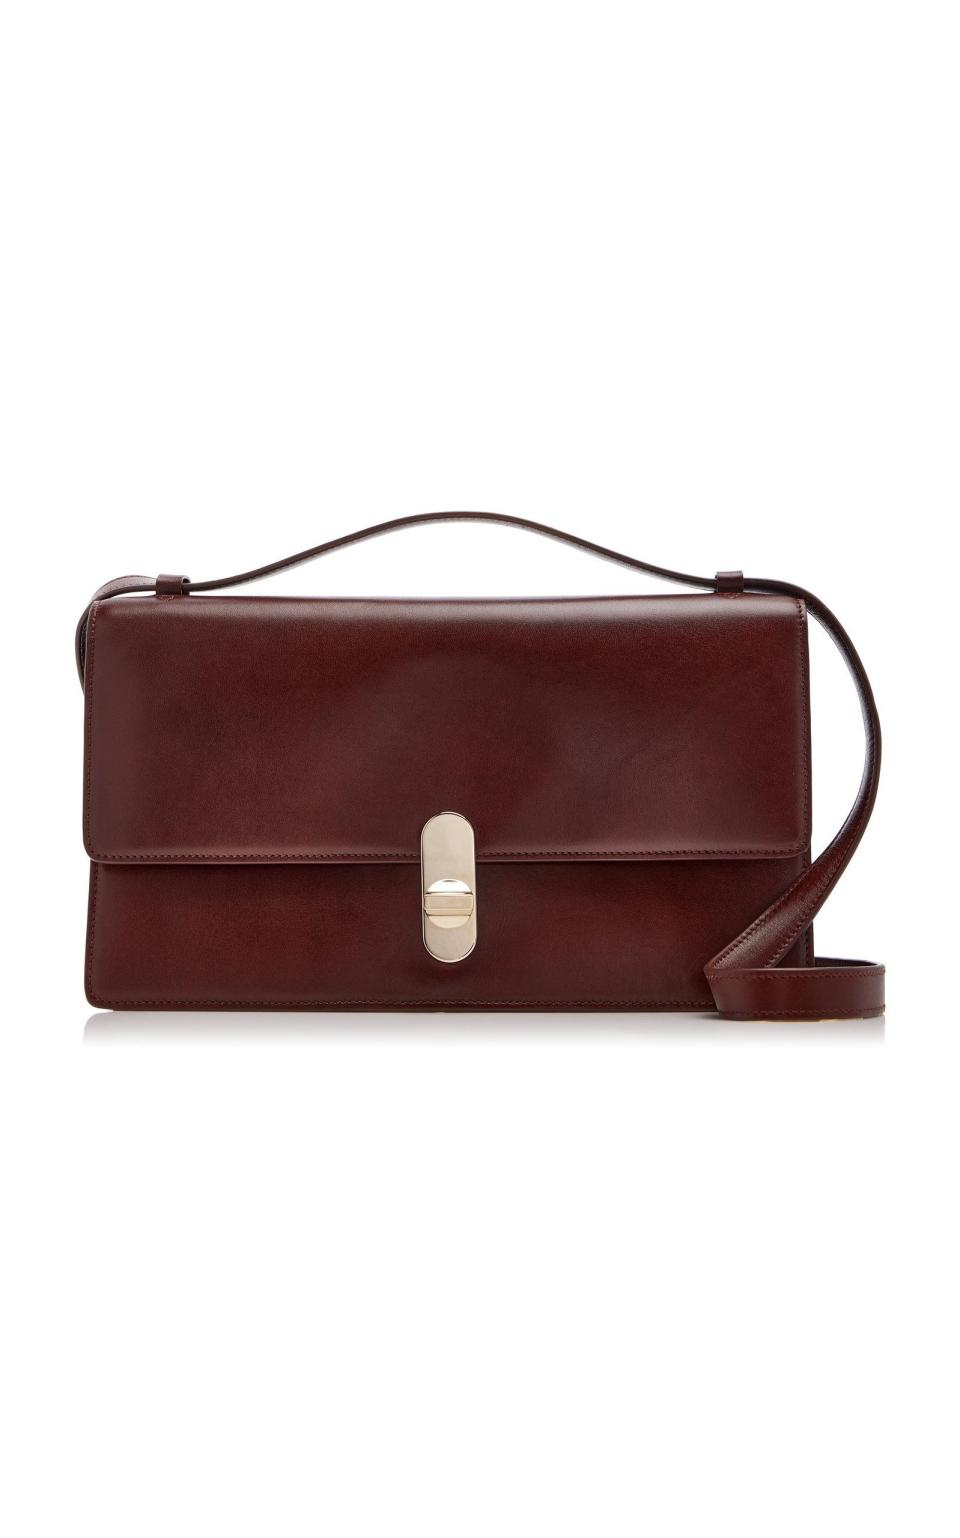 37) Clea Leather Shoulder Bag